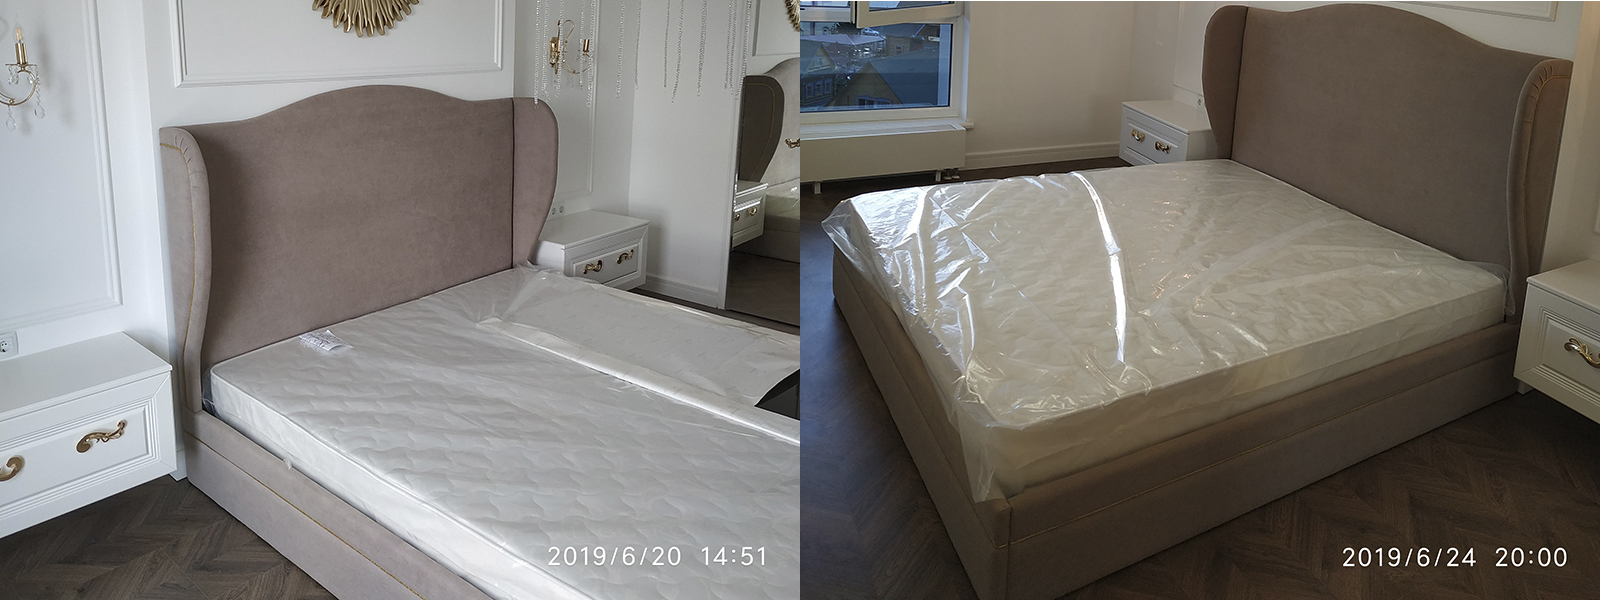 Обтяжка кровати в Казани - разумная стоимость, расчет по фото, высокое качество работы